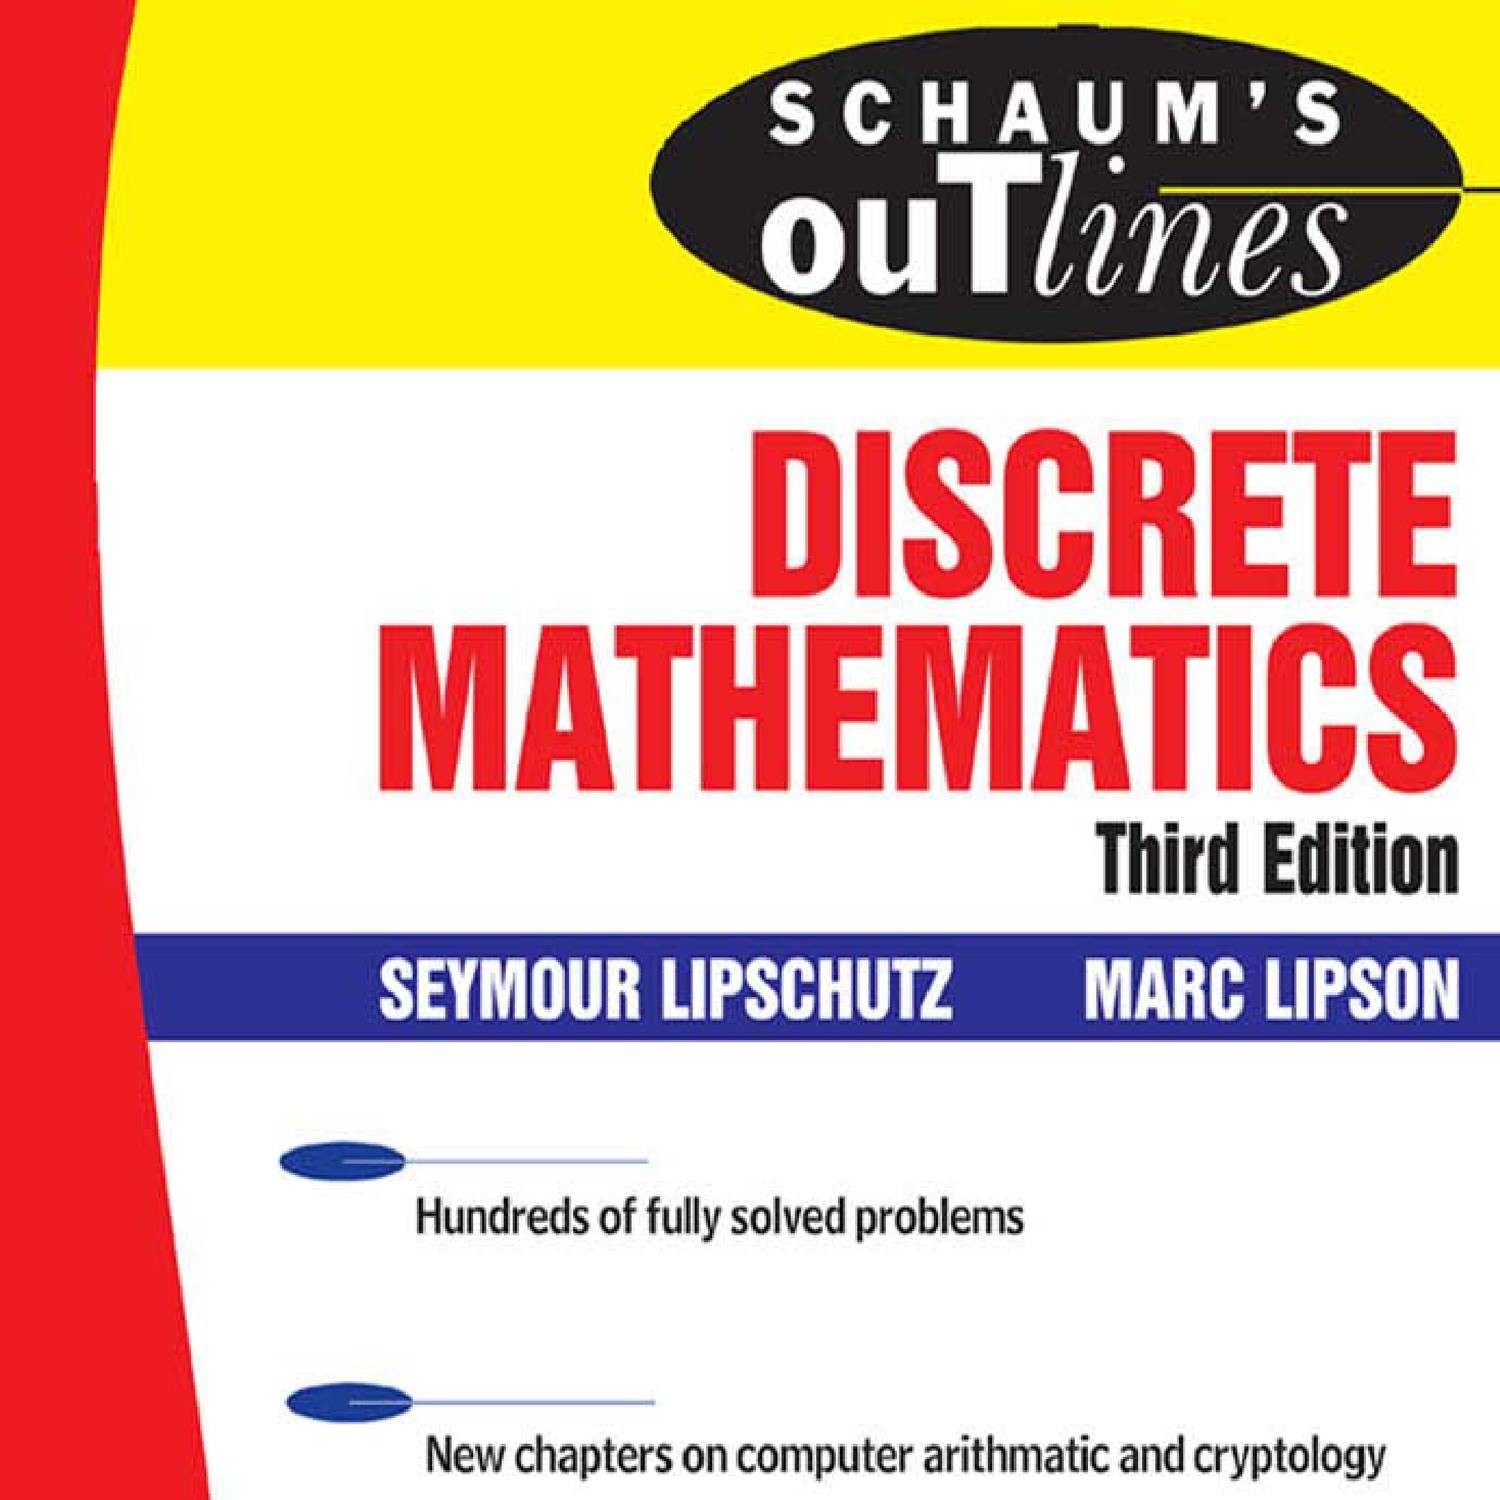 discrete mathematics ensley free pdf